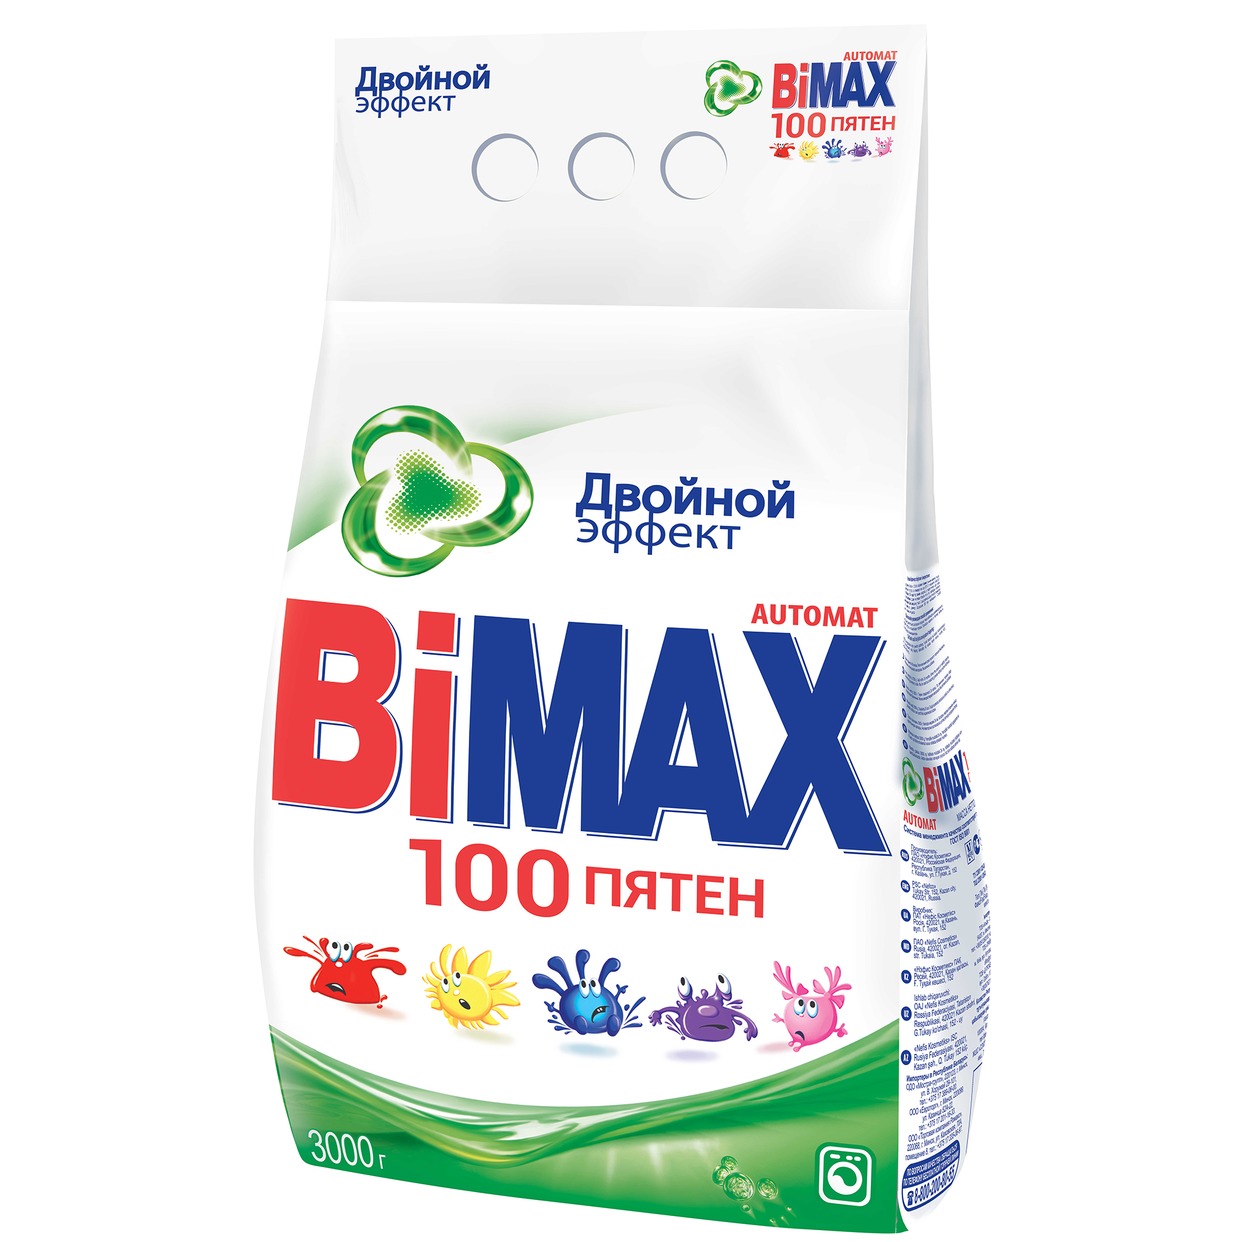 Стиральный порошок Bimax, 1000 пятен, 3 кг по акции в Пятерочке